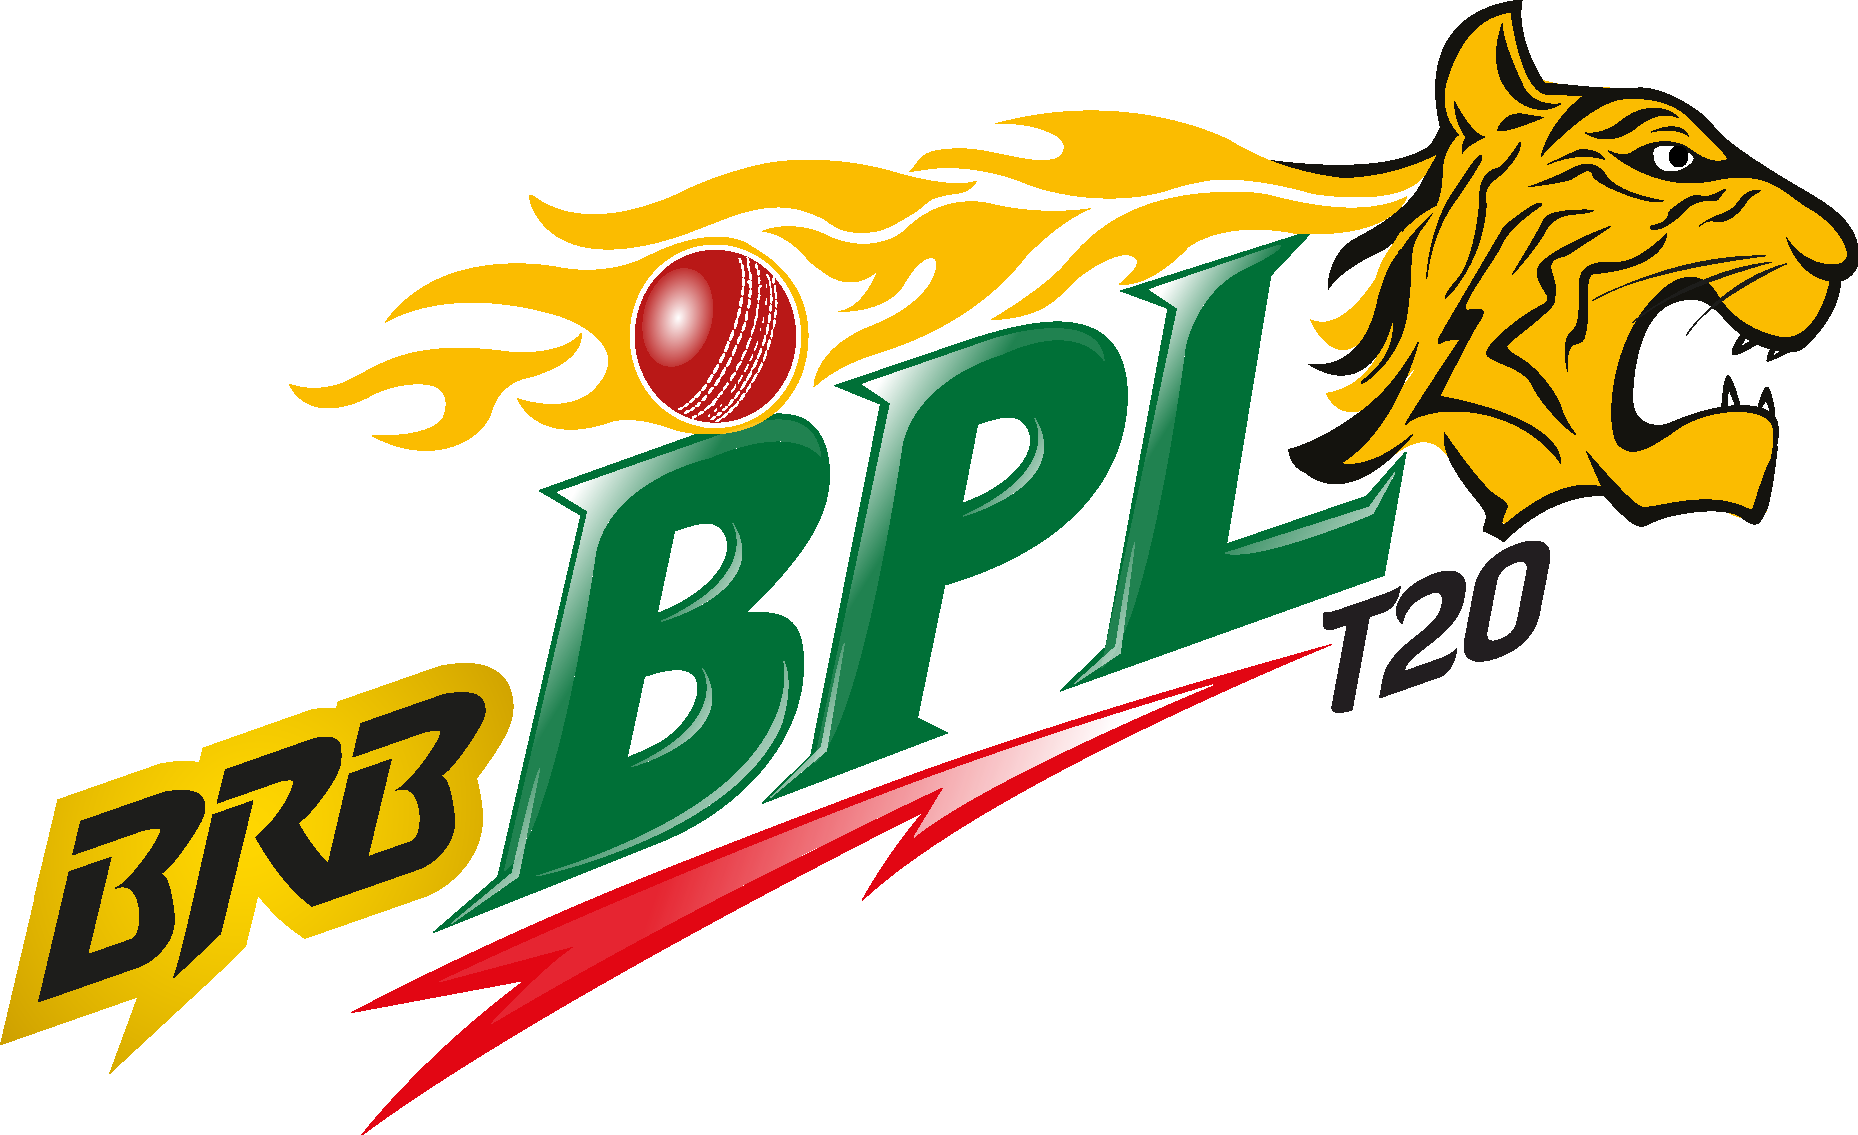 Bangladesh Premier League Logo by Reza on Dribbble